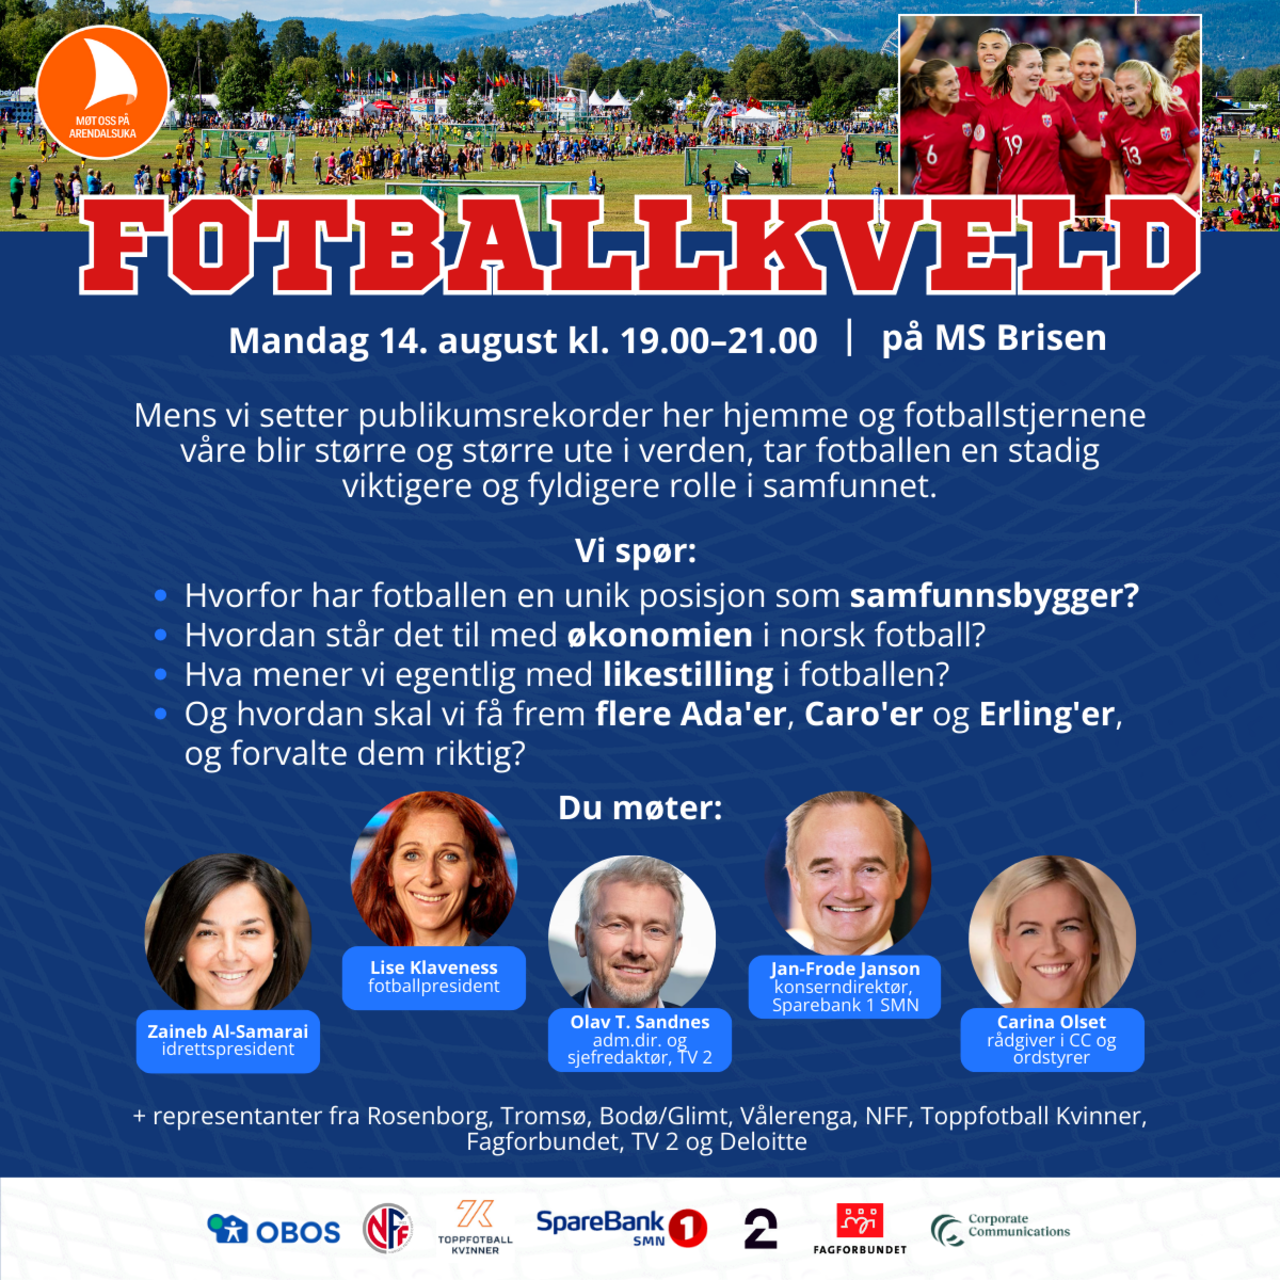 Fagforbundet er med å arrangerer Fotballkveld under årets Arendalsuke